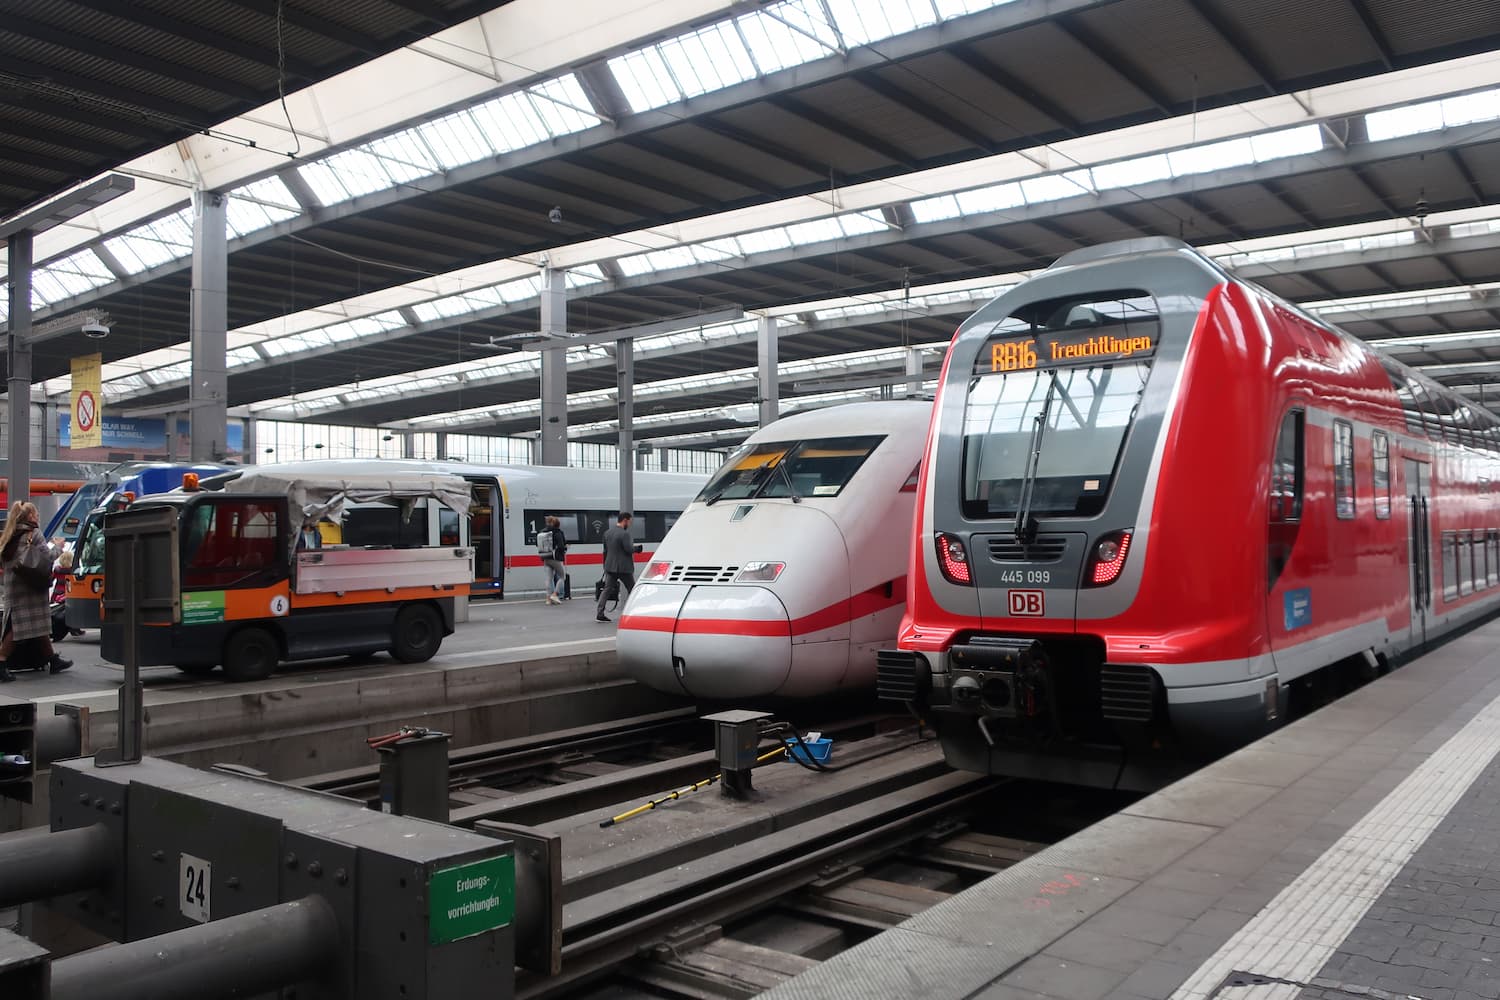 ドイツ版新幹線のICEの特徴と乗る際に気を付けたいこと。